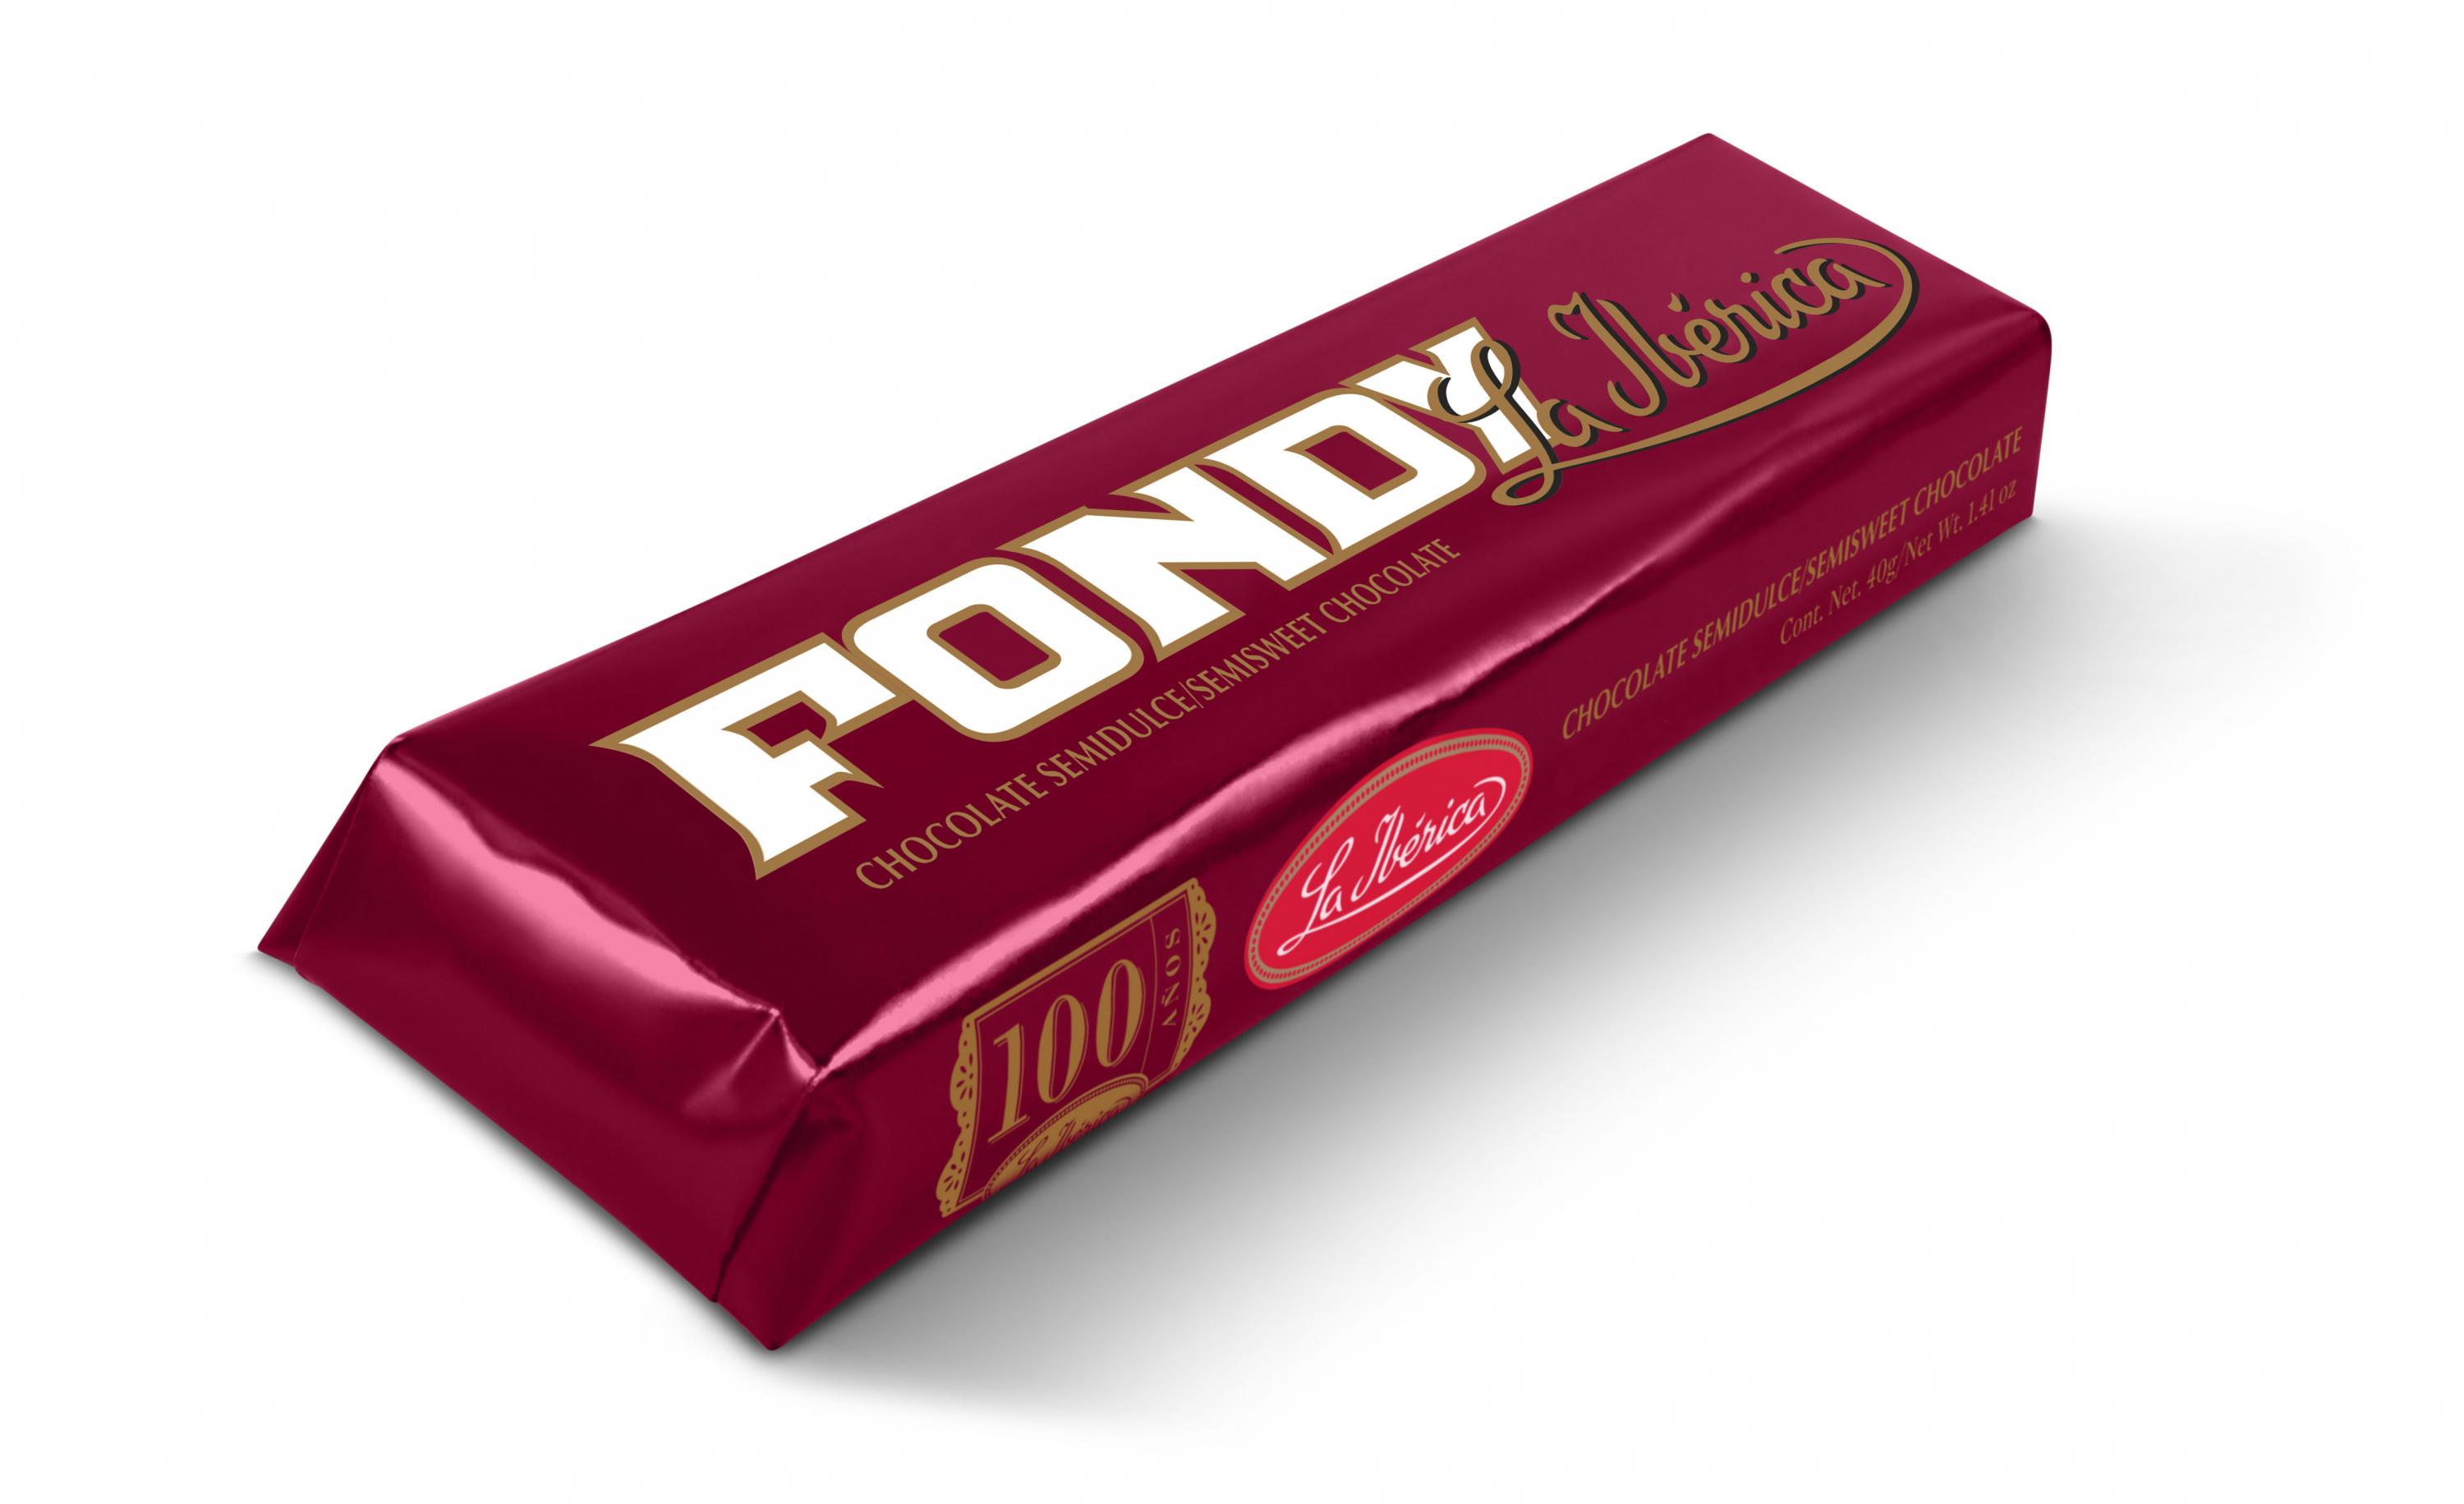 Fondy de La Ibérica, una de las marcas más vendidas por la empresa según su gerente de producción, Julio Mogrovejo, contiene 52% de cacao en sus diferentes presentaciones.